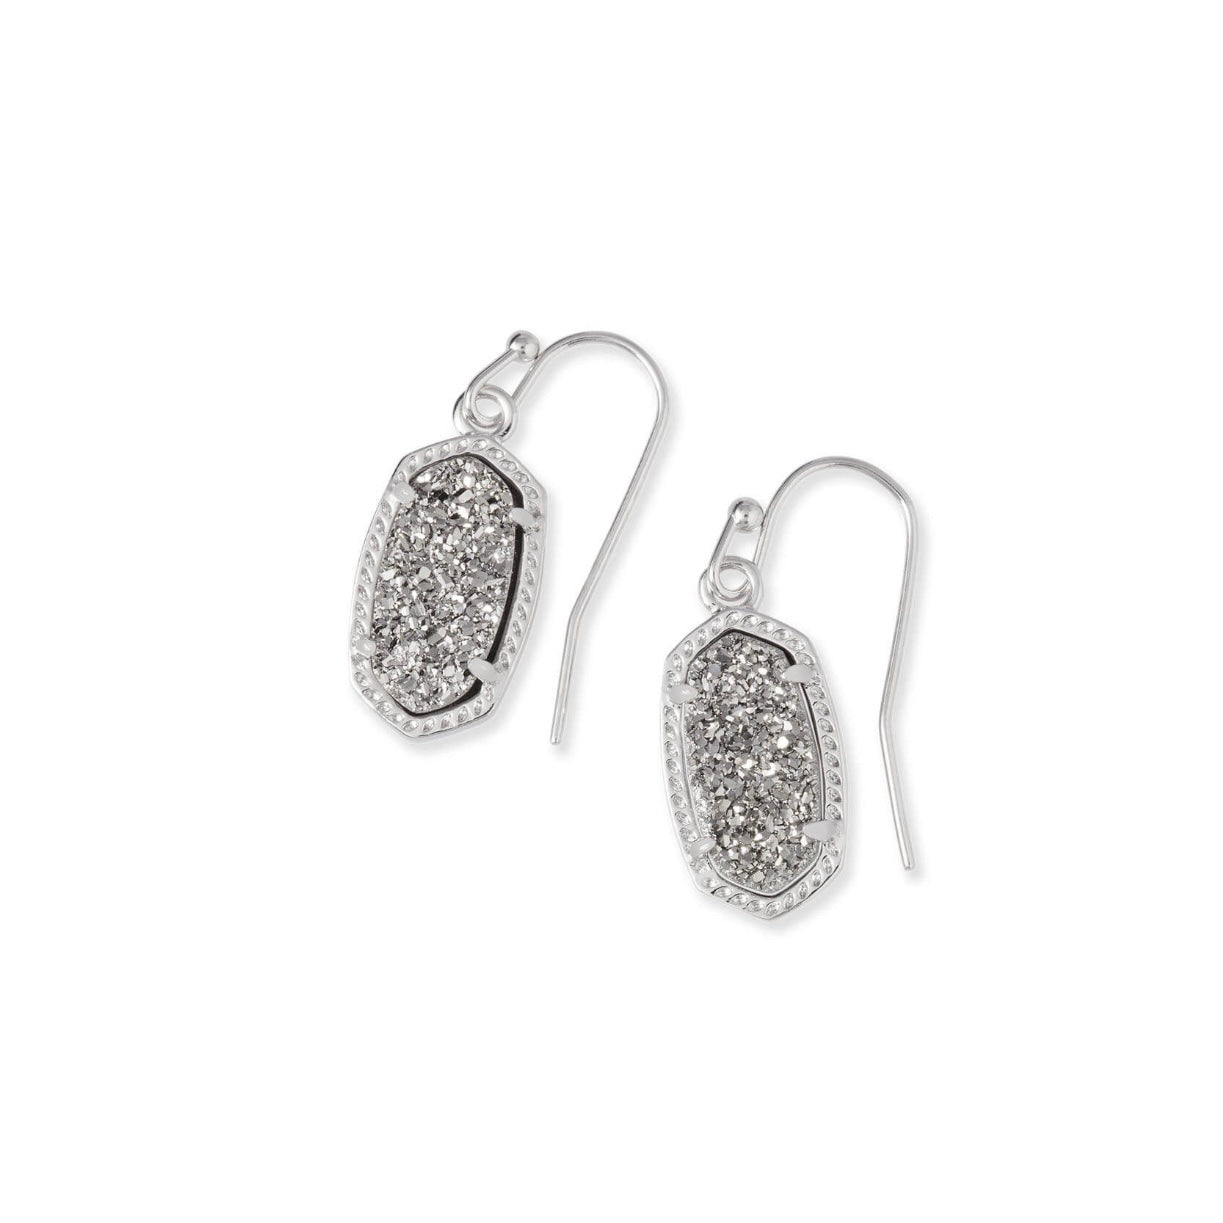 KENDRA SCOTT Lee Drop Silver Earrings in Platinum Drusy - The Street Boutique 